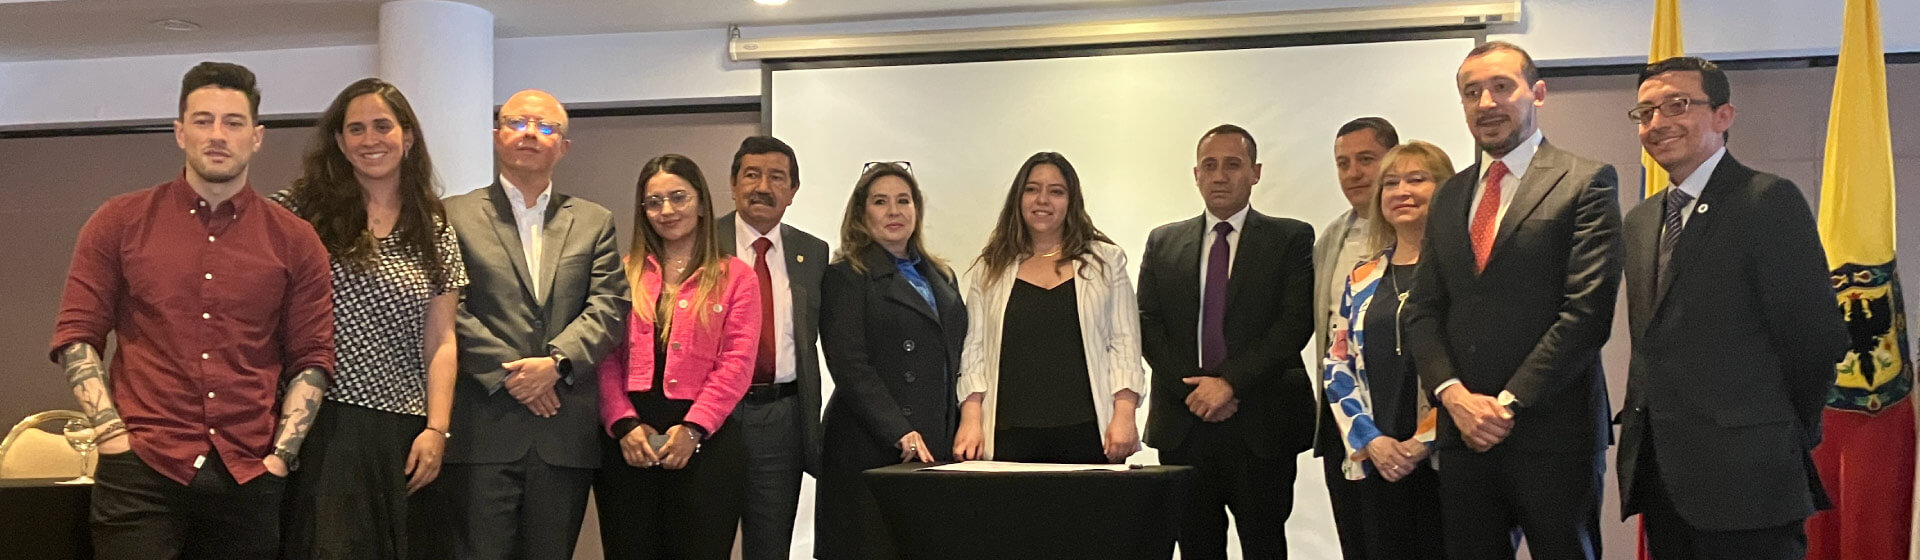 Representantes de consultorios y clínicas jurídicas de universidades en Bogotá